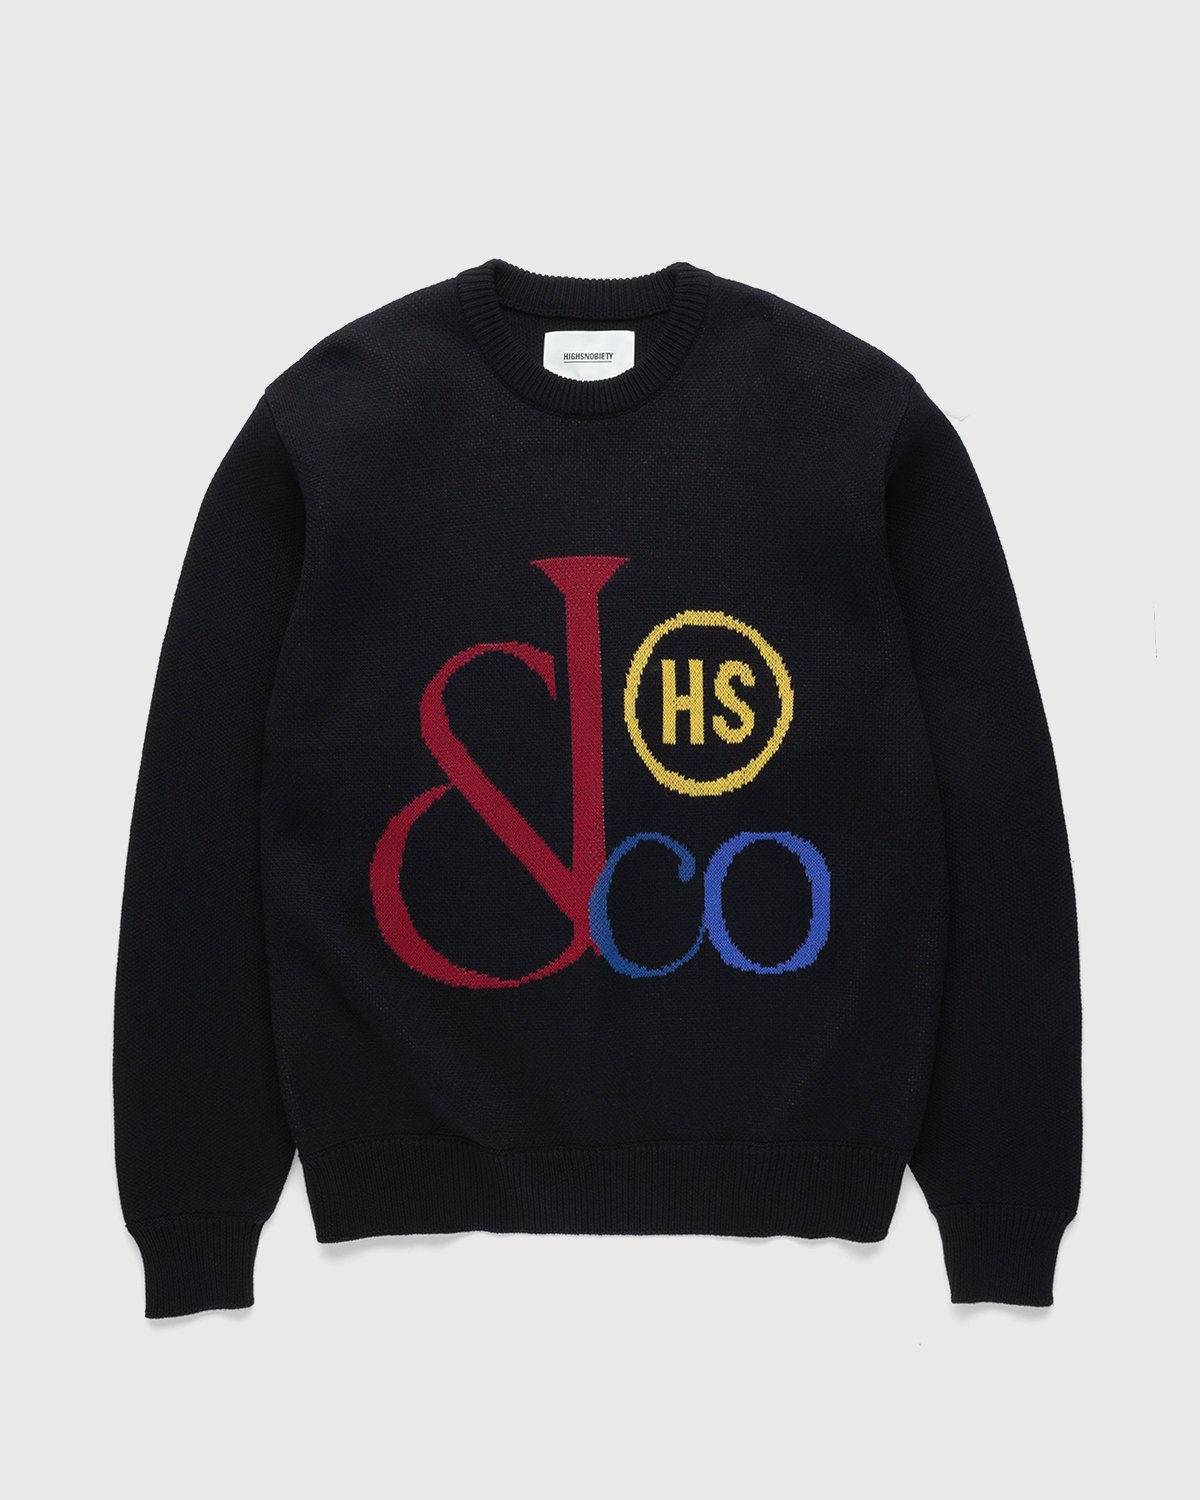 Jacob & Co. x Highsnobiety - Logo Knit Sweater Black - Clothing - Black - Image 1